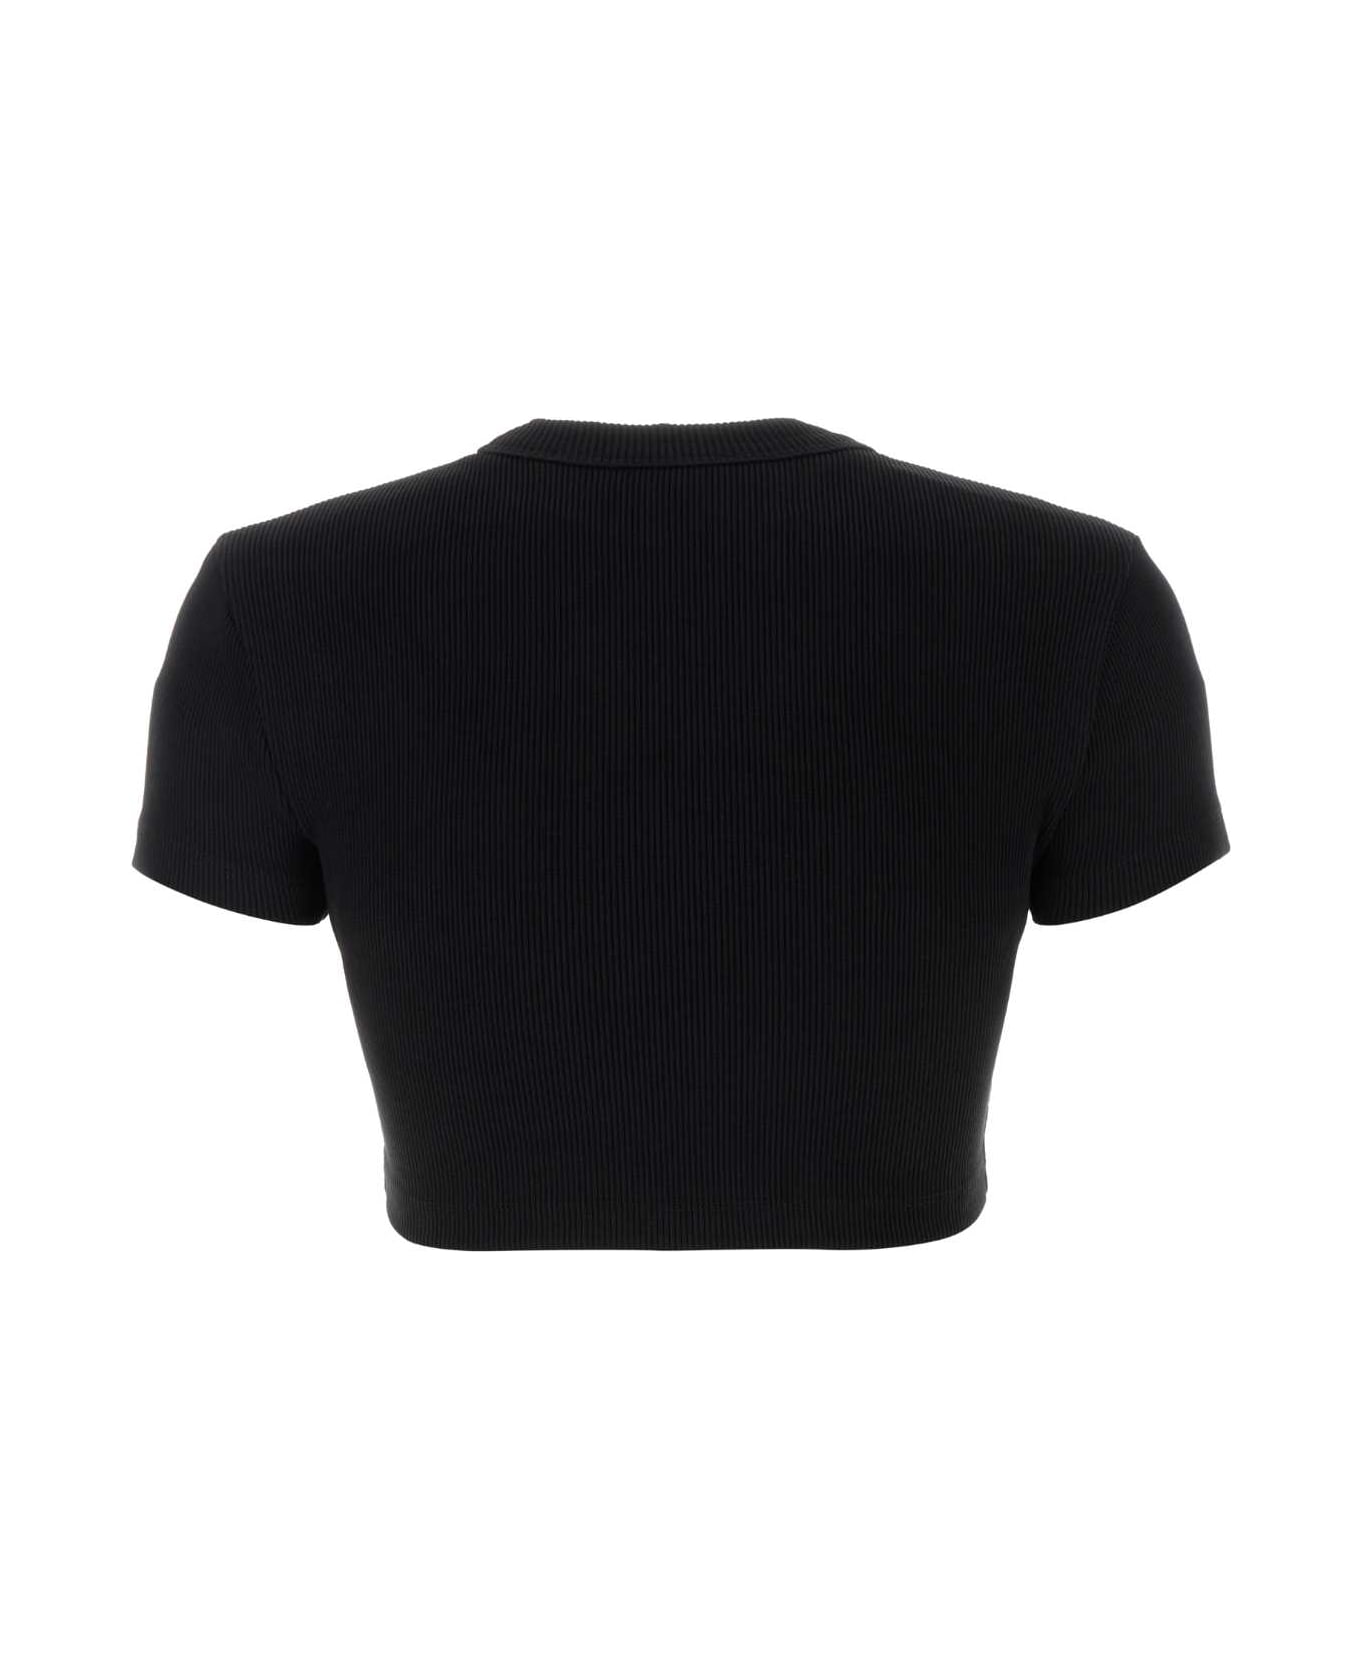 T by Alexander Wang Black Stretch Cotton T-shirt - BLACK